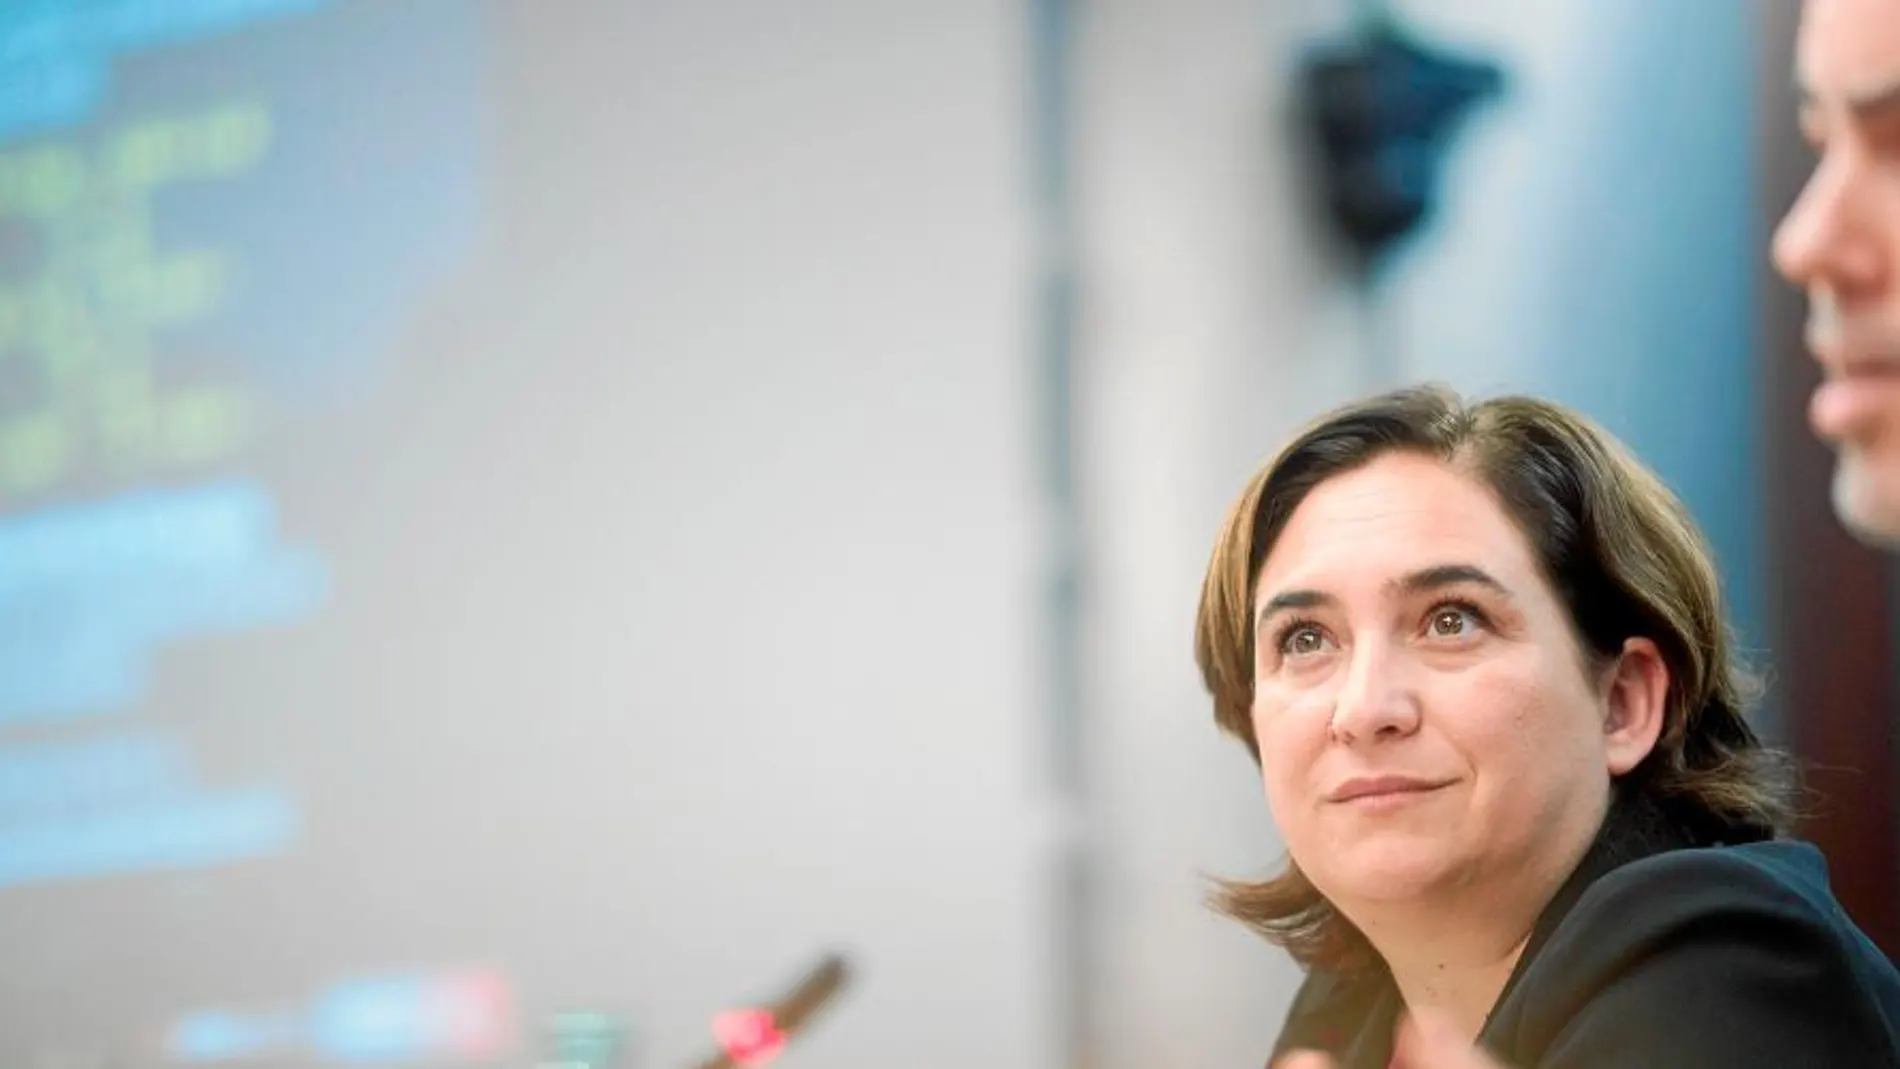 La alcaldesa de Barcelona asegura que su eléctrica competirá en «proximidad y transparencia».